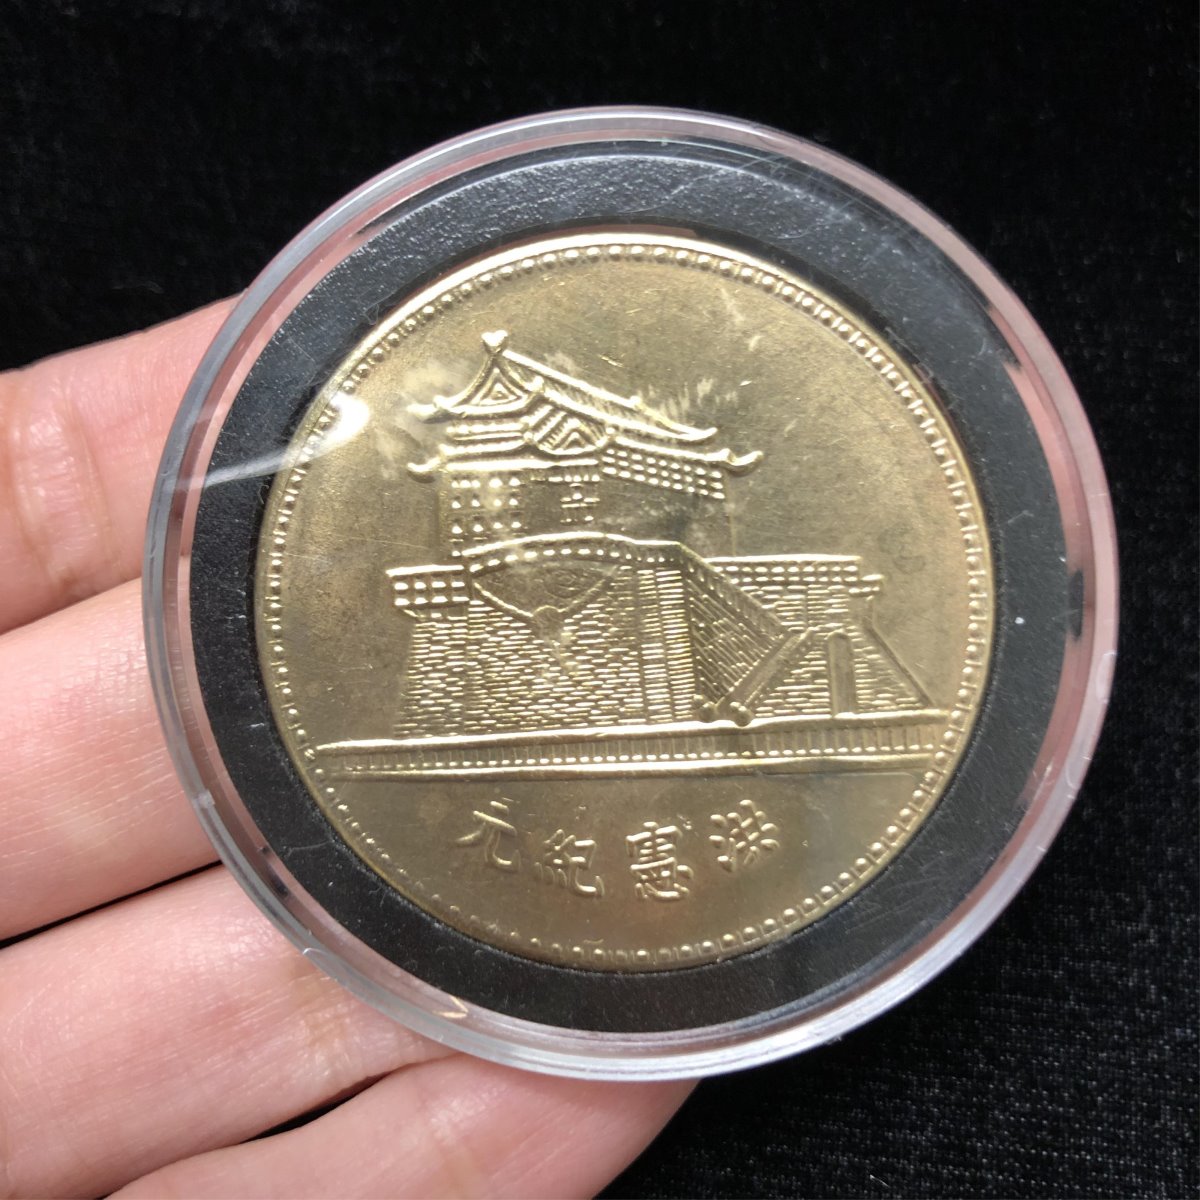 HONG XIAN JI YUAN One Dollar Coin - Image 7 of 8